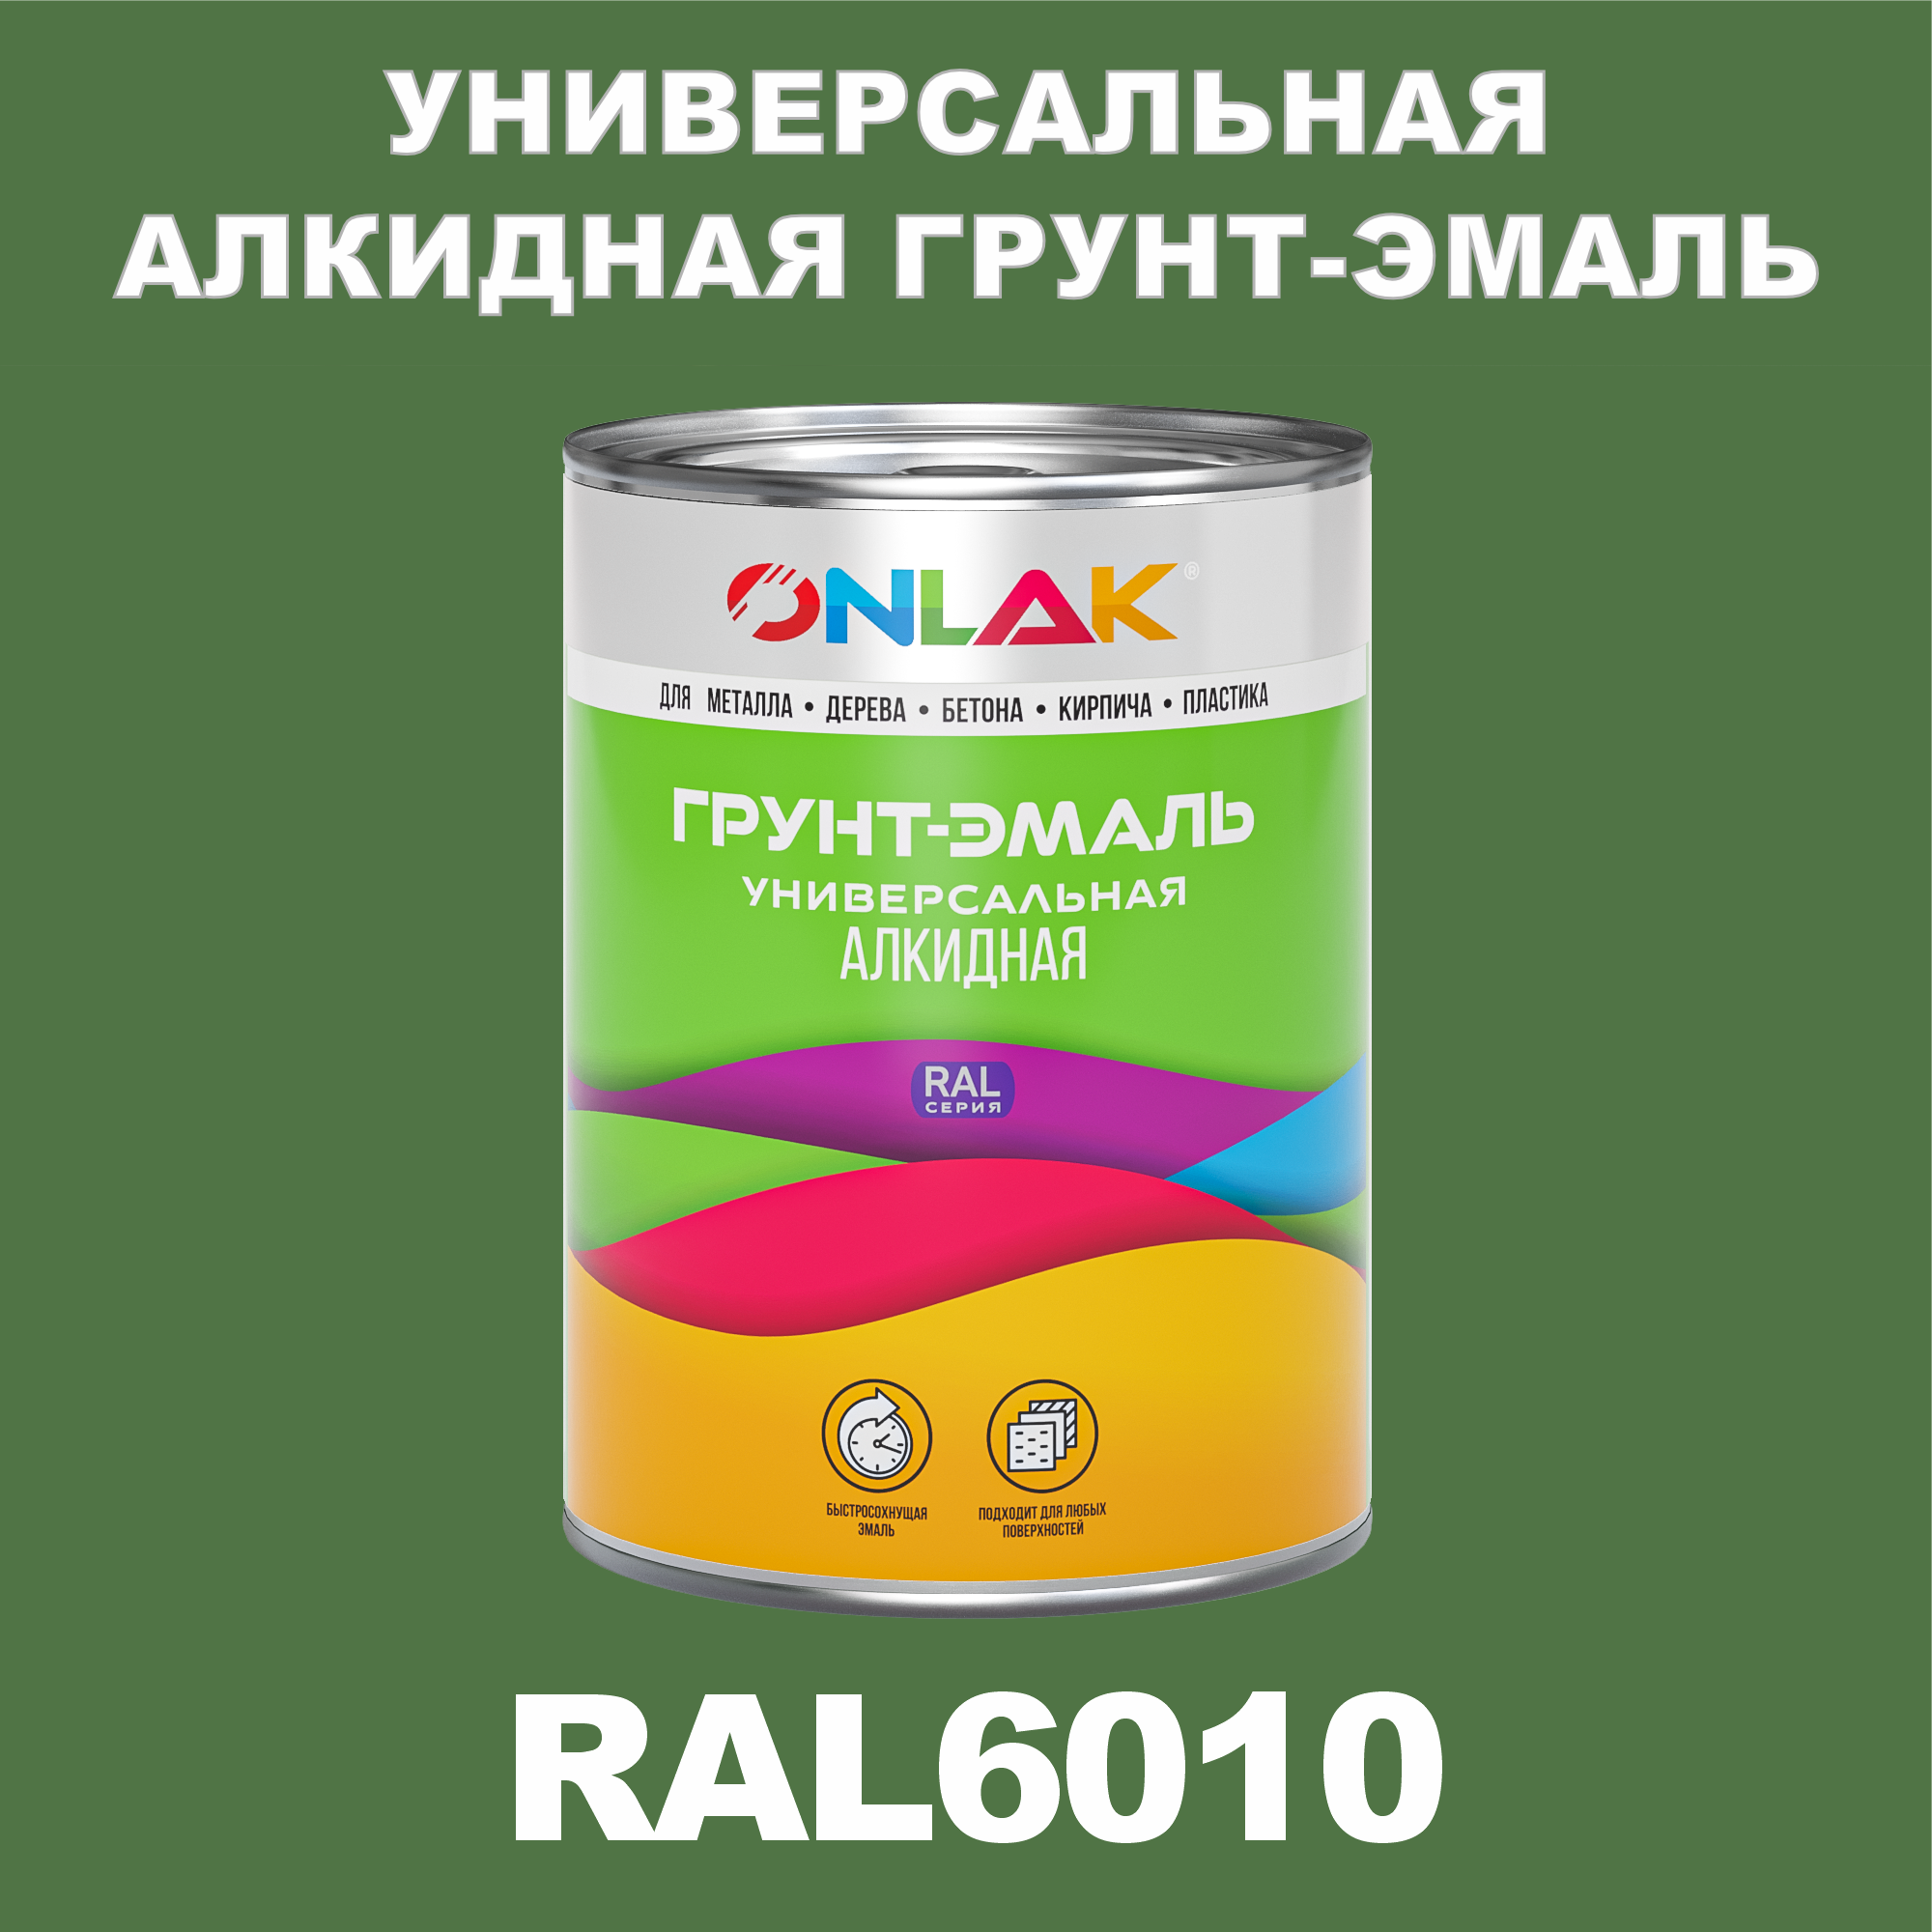 Грунт-эмаль ONLAK 1К RAL6010 антикоррозионная алкидная по металлу по ржавчине 1 кг грунт эмаль аэрозольная престиж 3в1 алкидная коричневая ral 8017 425 мл 0 425 кг